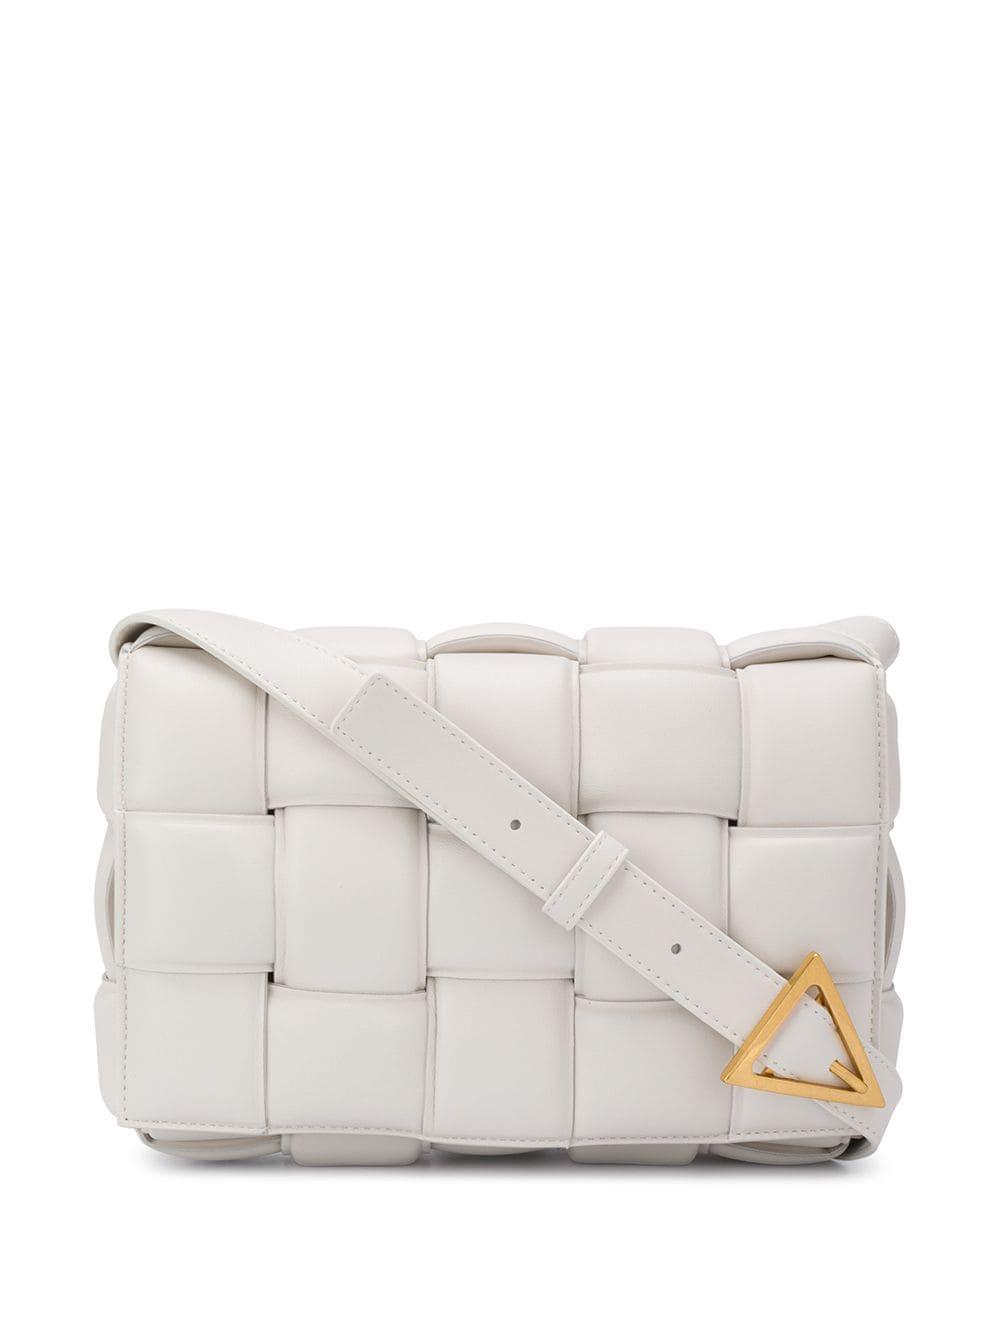 Bottega Veneta Leather Cassette Padded Crossbody Bag in White - Lyst